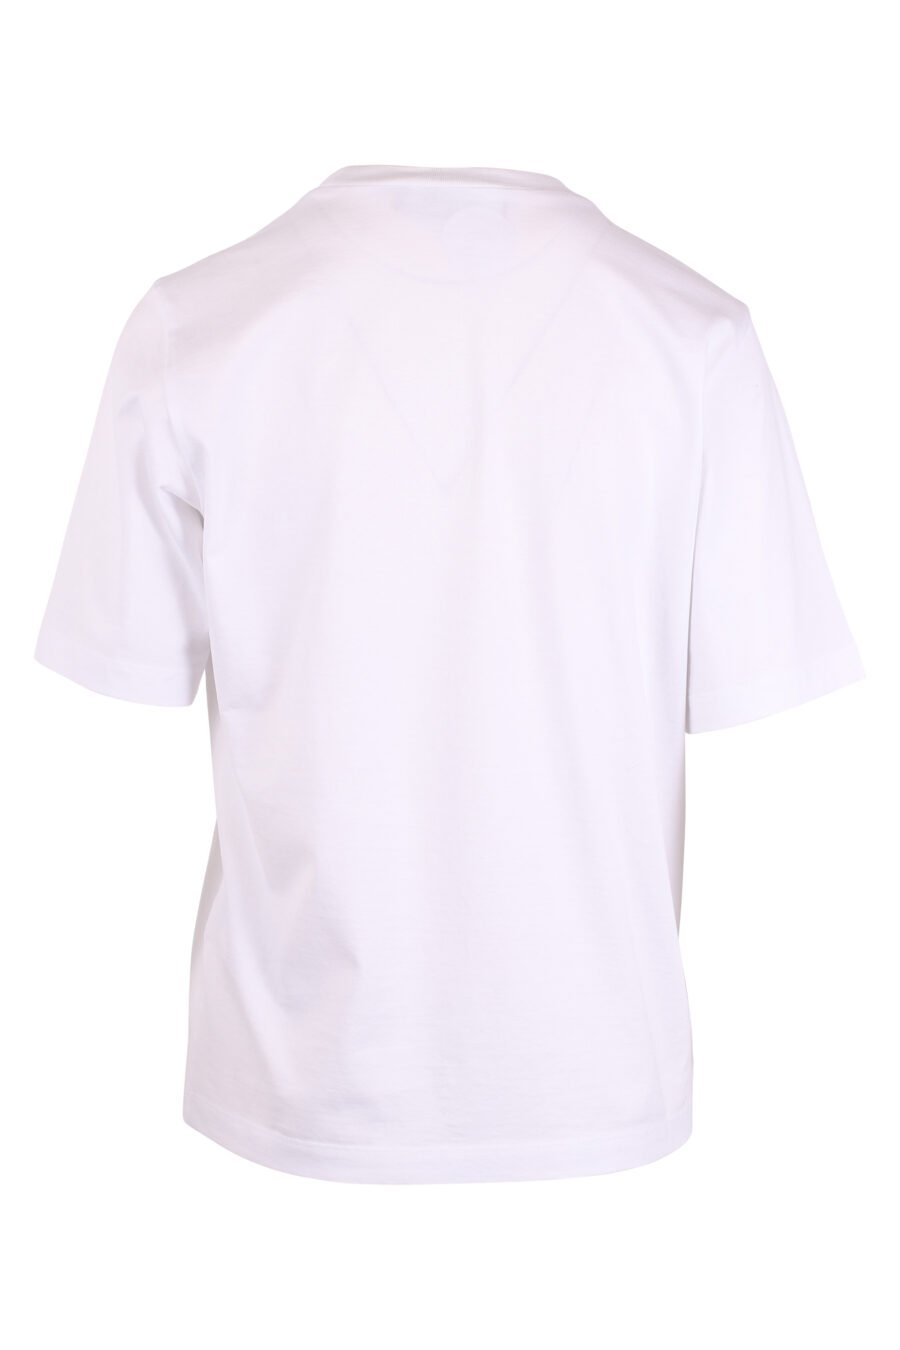 T-shirt blanc avec logo en forme de feuille caricaturale - IMG 4360